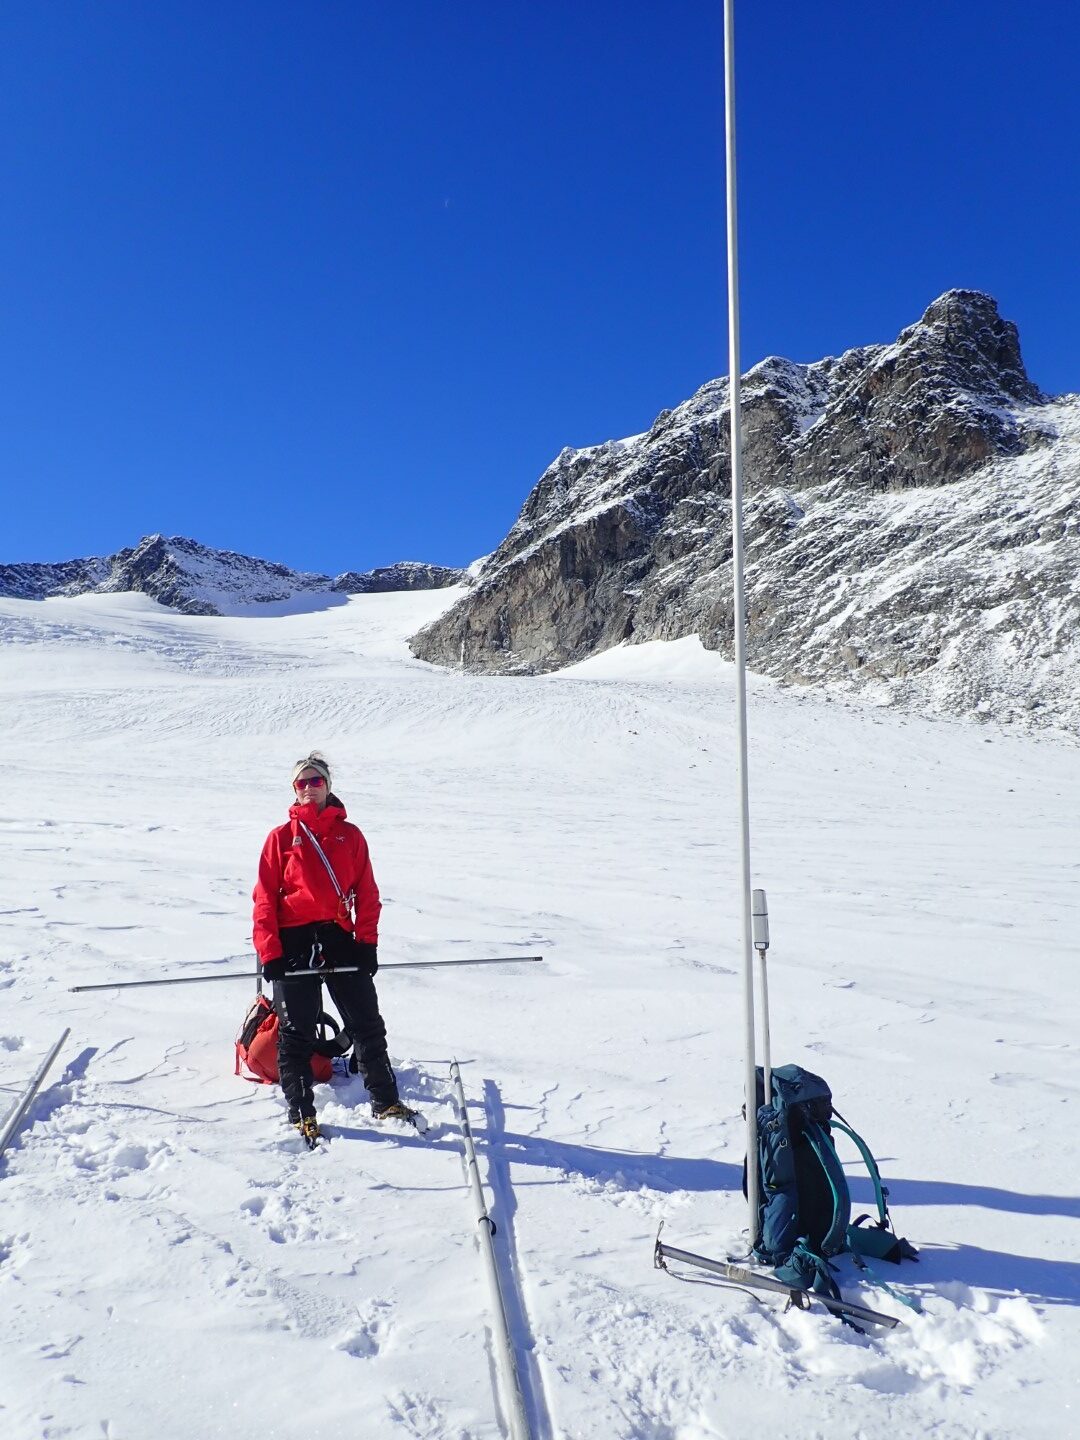 Bilde av en person som gjør målinger på en isbre.